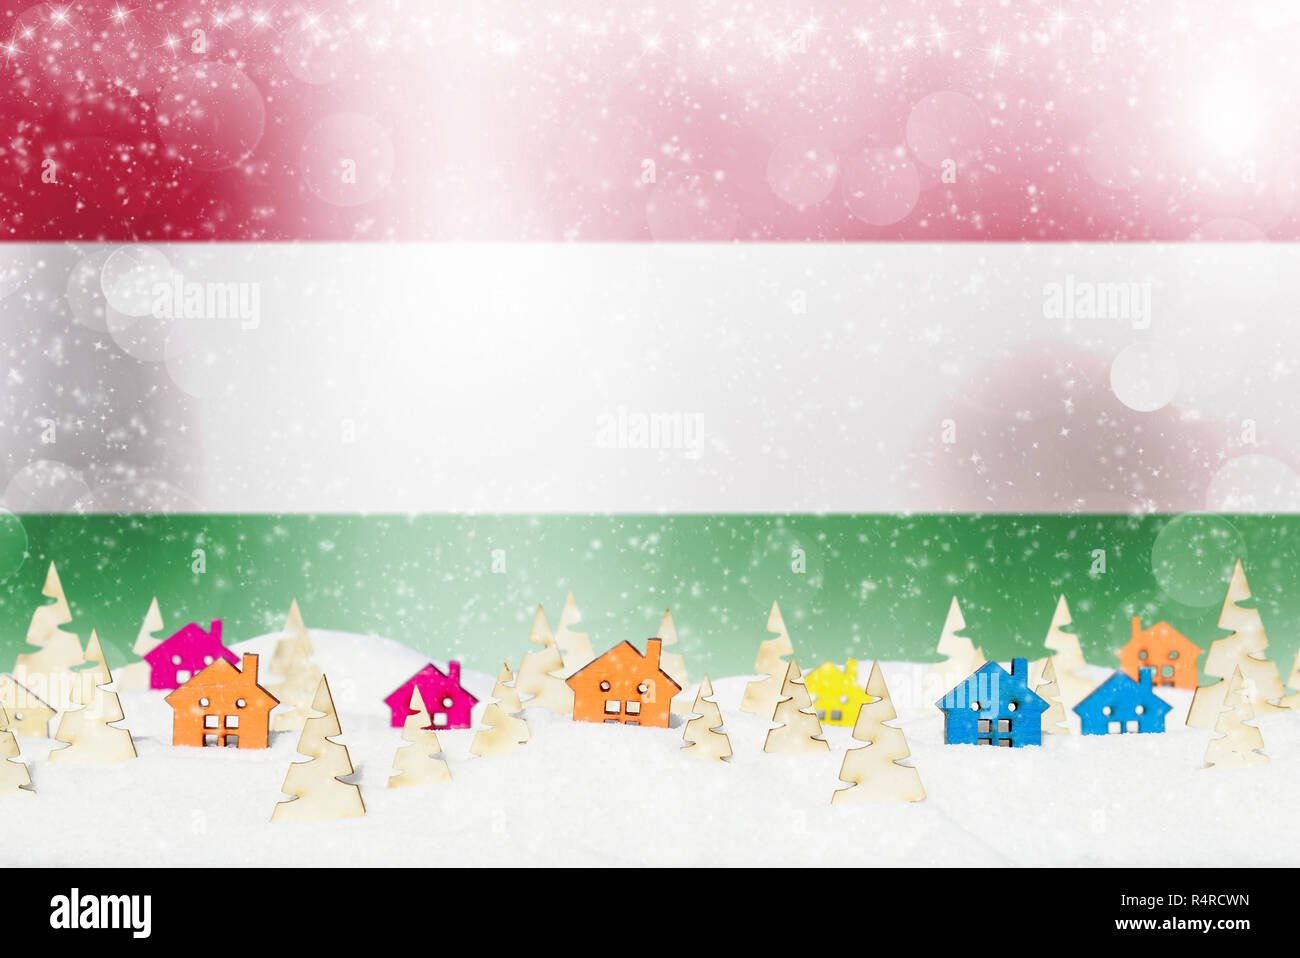 Fondo de navidad con bandera húngara, pequeñas casas de madera, árboles de Navidad y nieve. Foto de stock